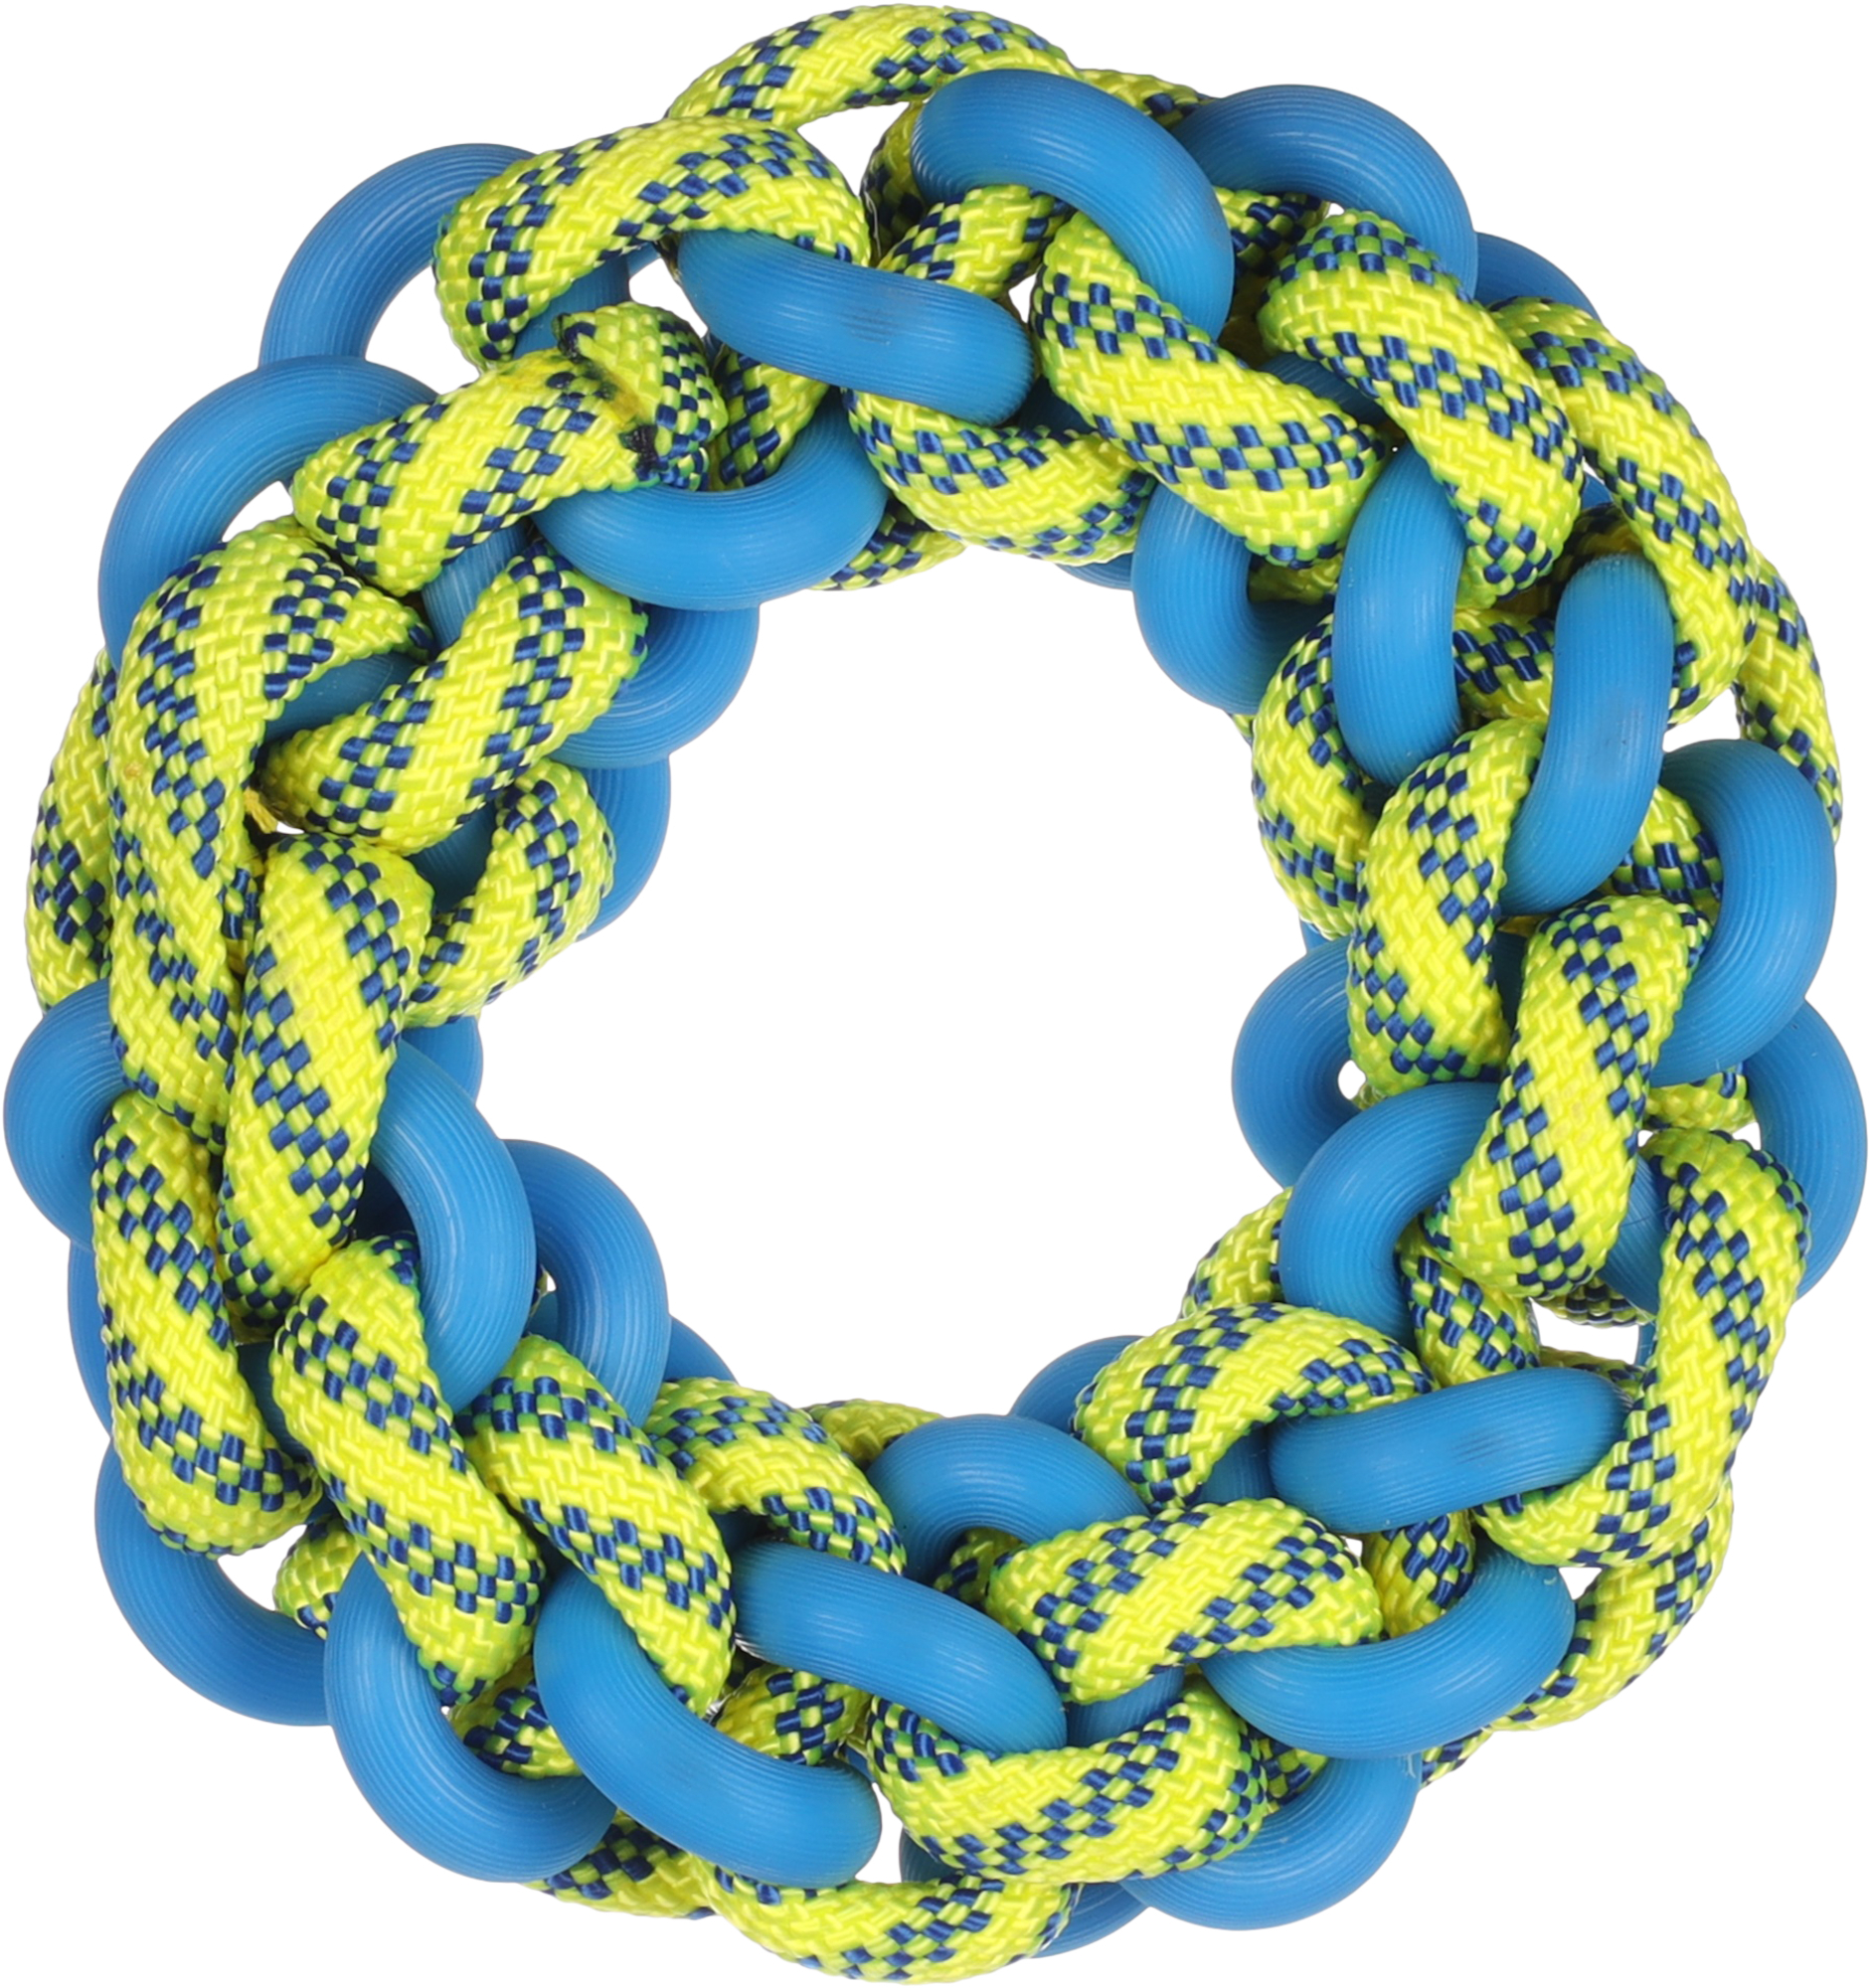 Juguete para perro Tofla anillo azul/amarillo de caucho y nylon resistente